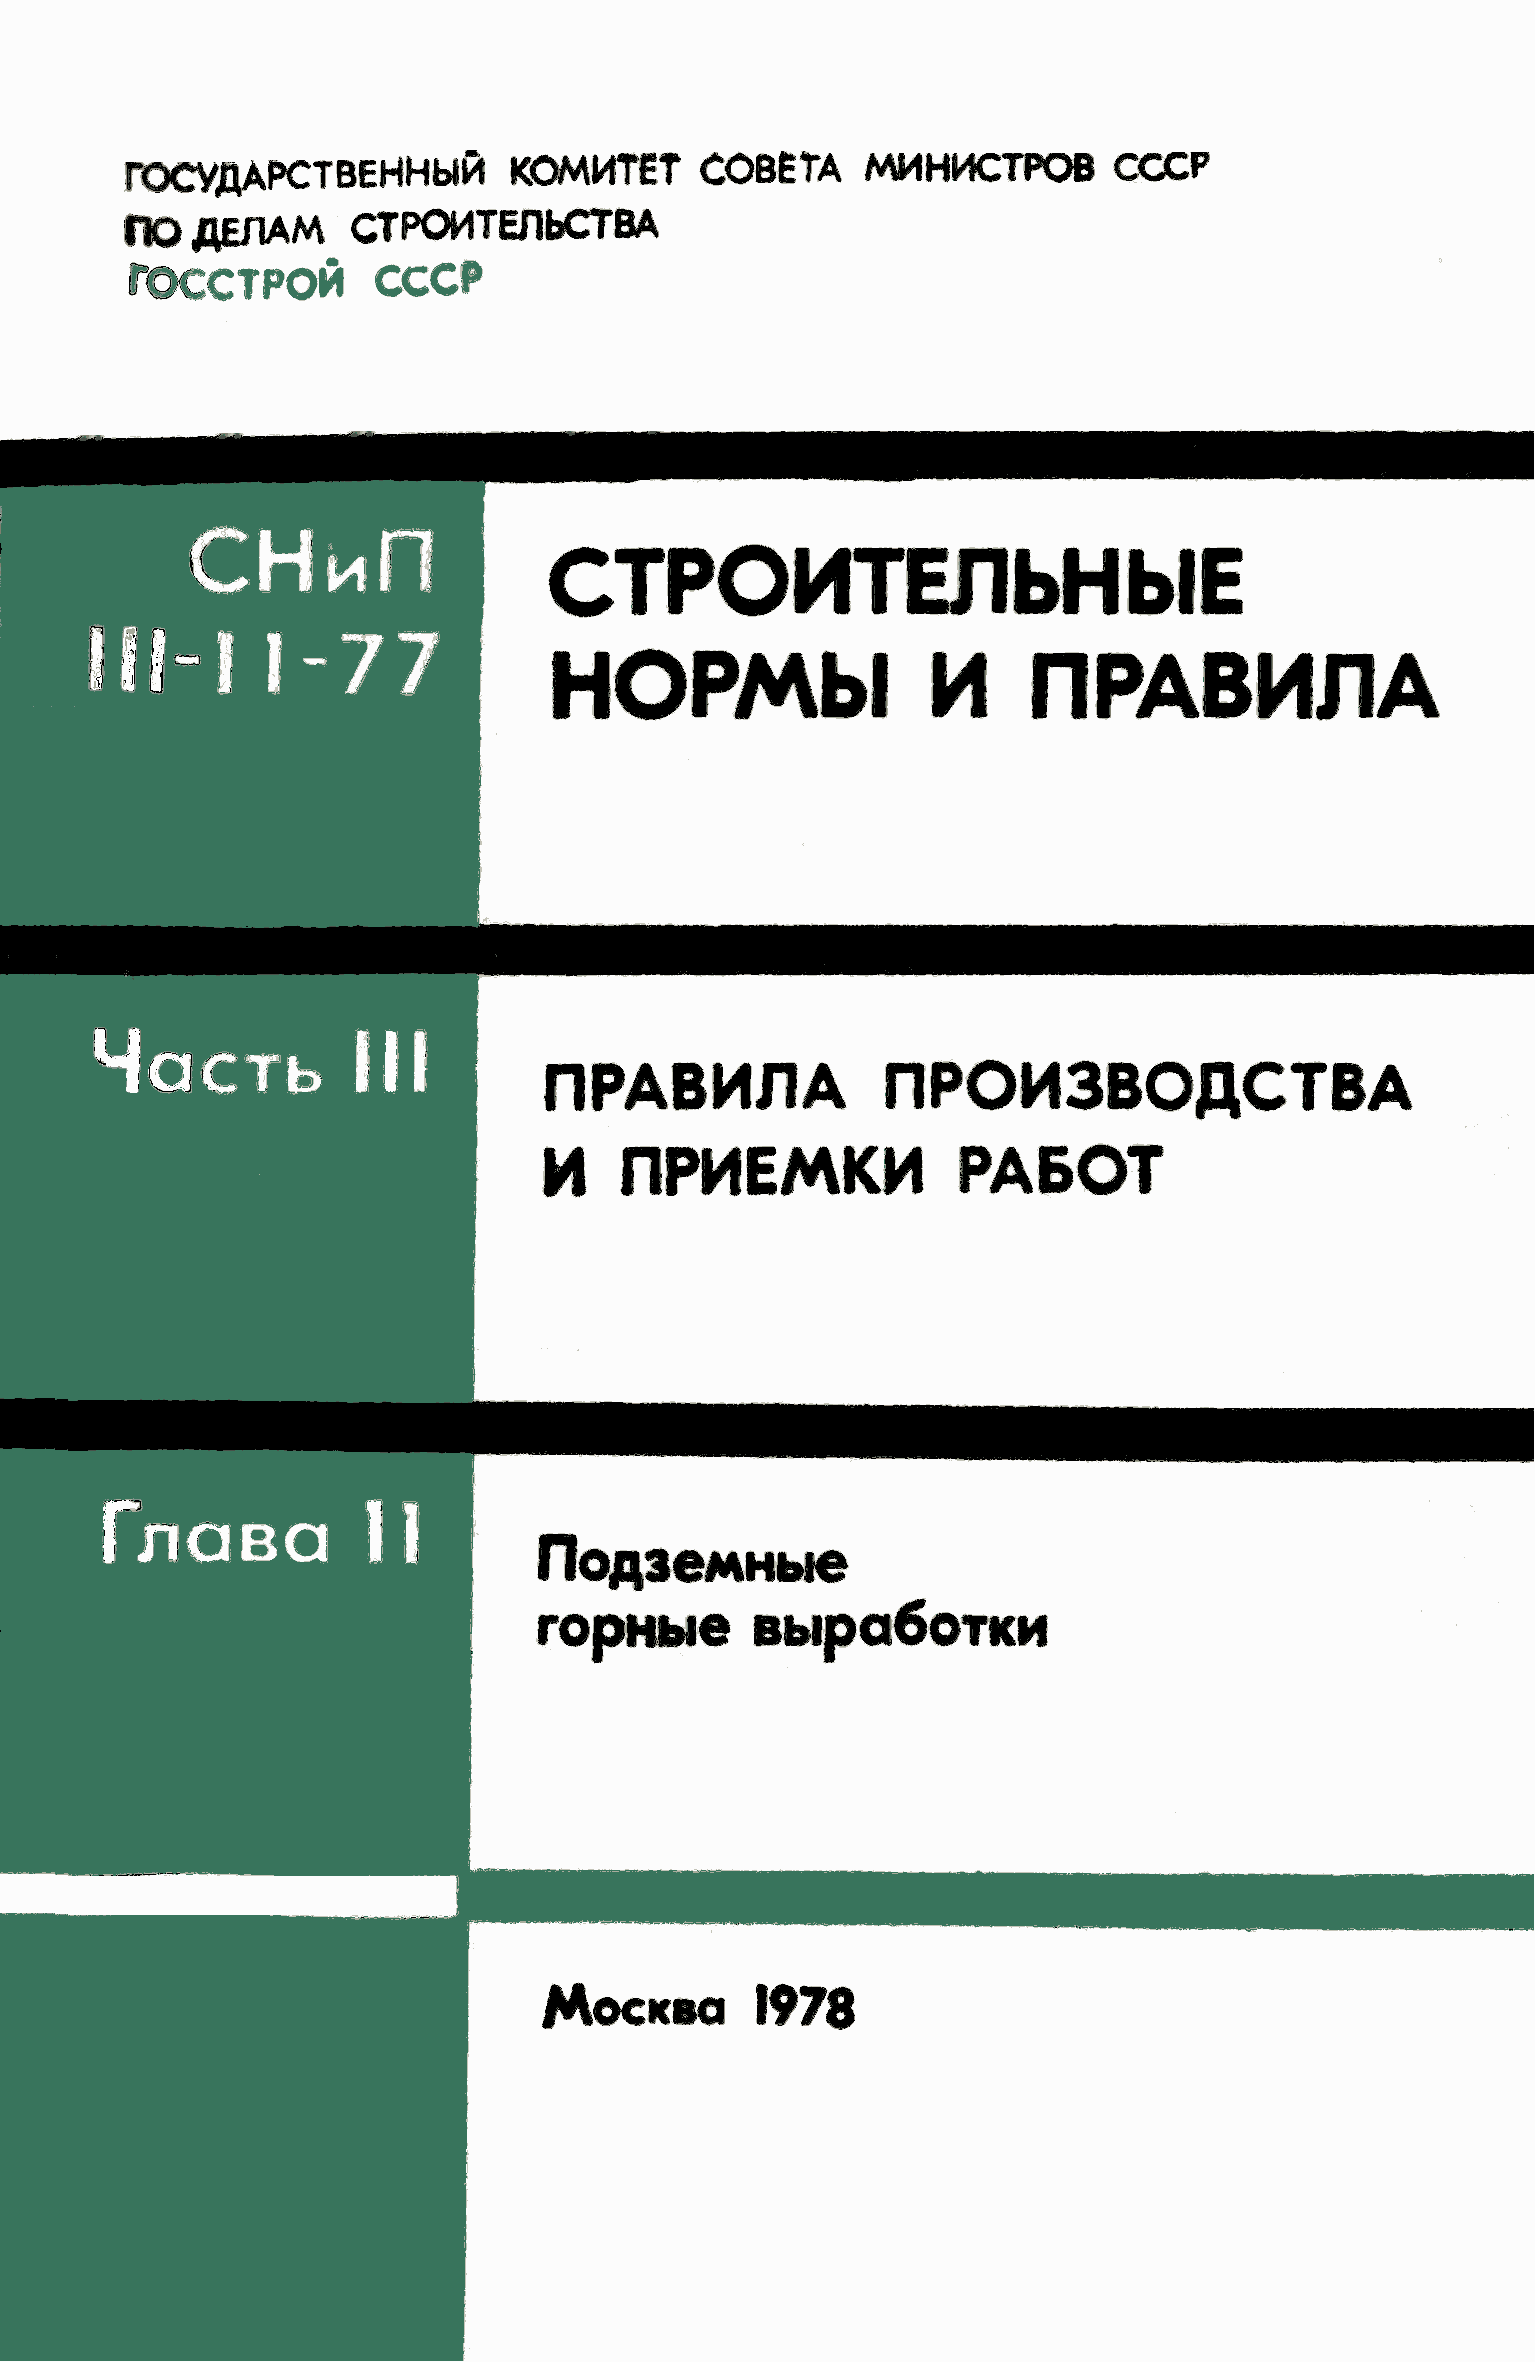 СНиП III-11-77